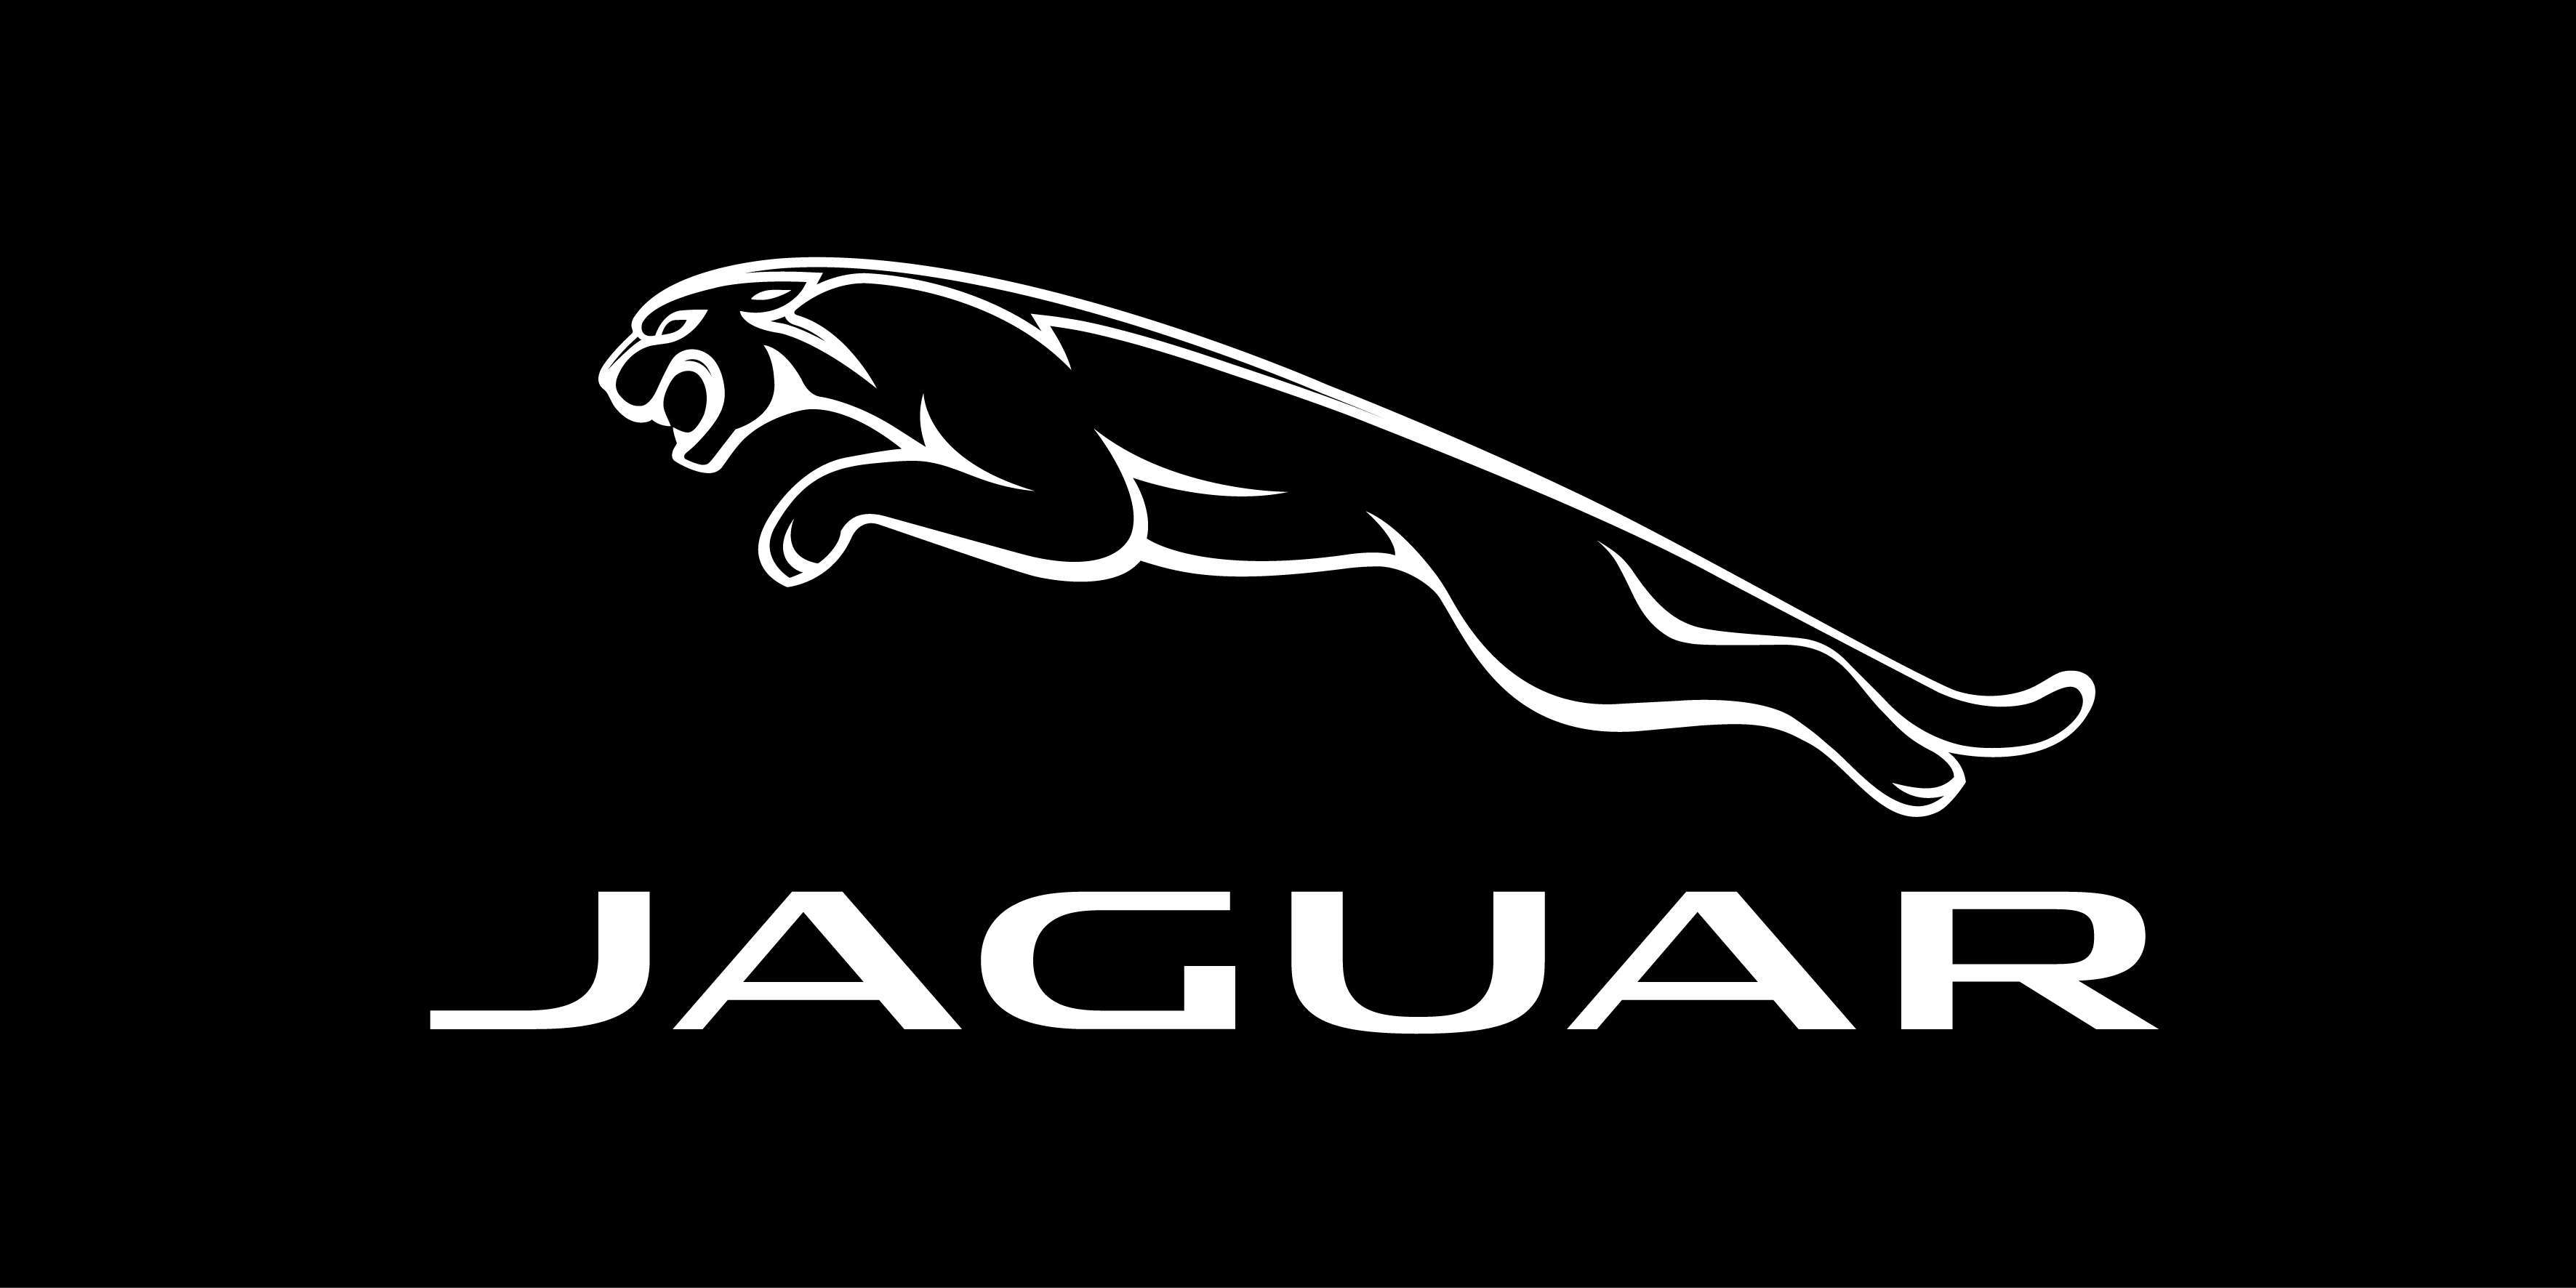 Jaguar car logo wallpaper | 2018 Printable calendars posters images